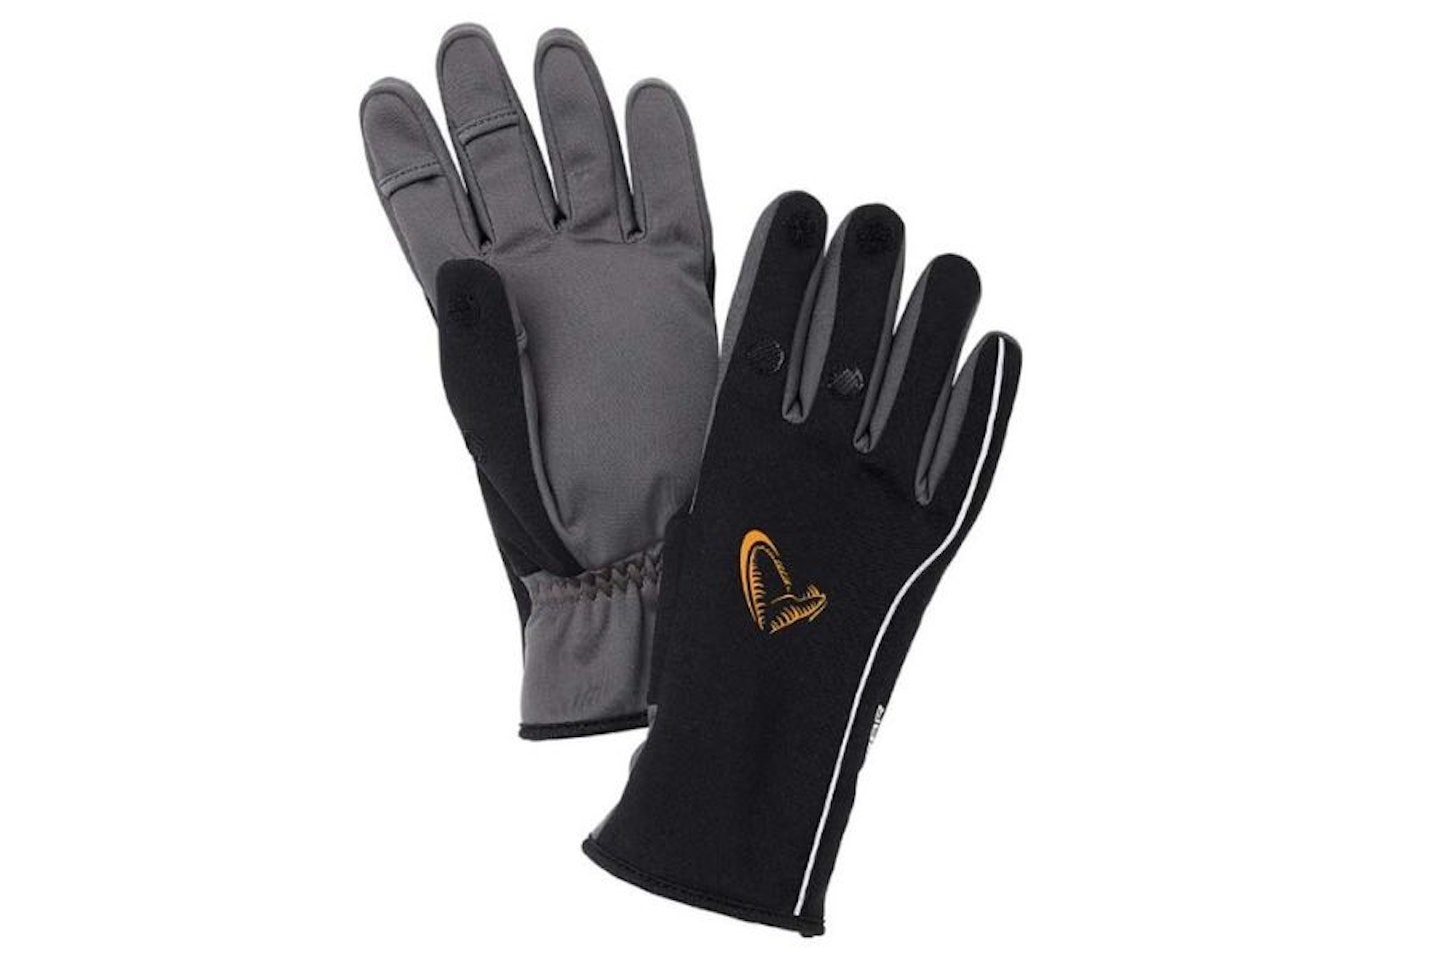 Savage Gear Softshell Winter Gloves